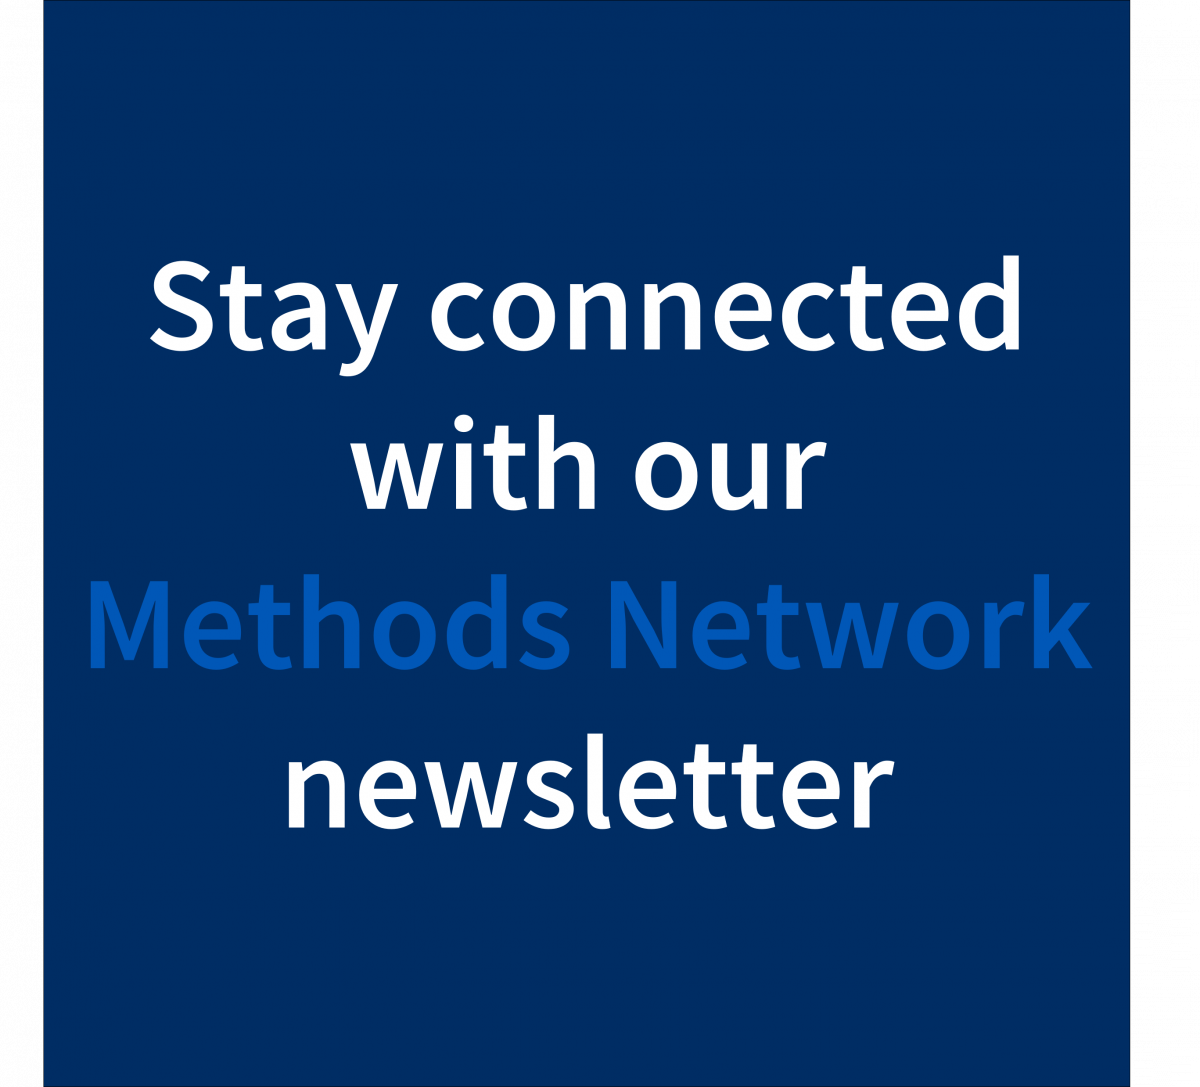 Methods Network newsletter